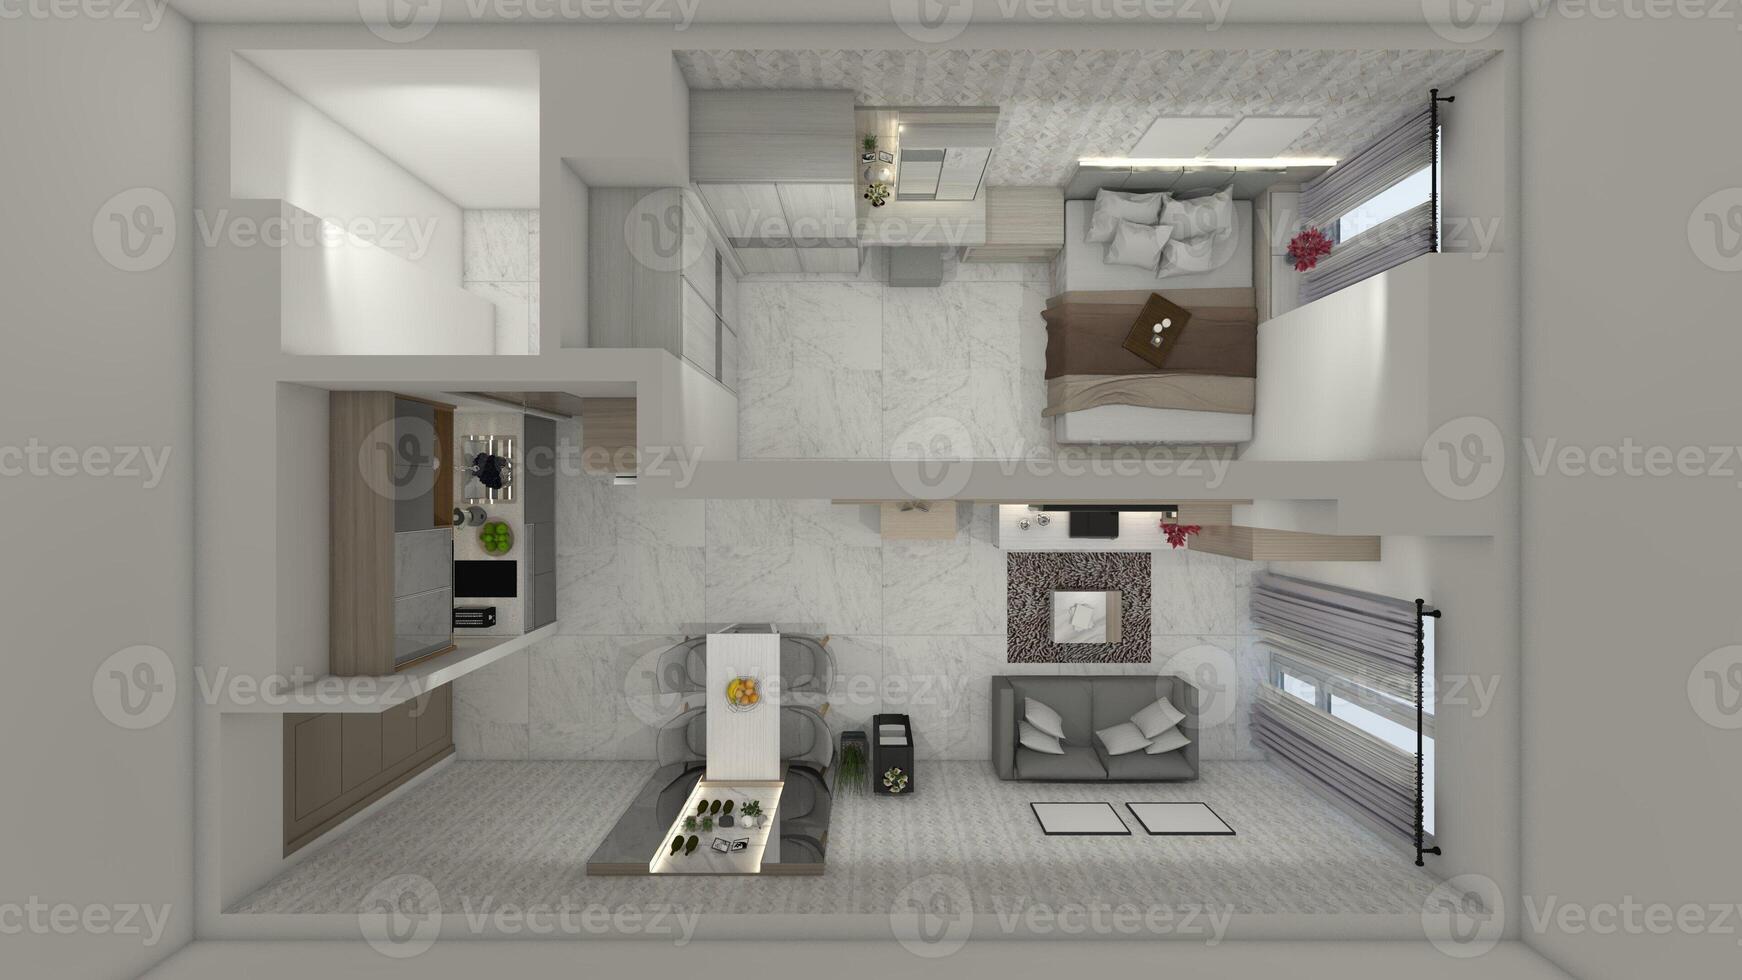 für planen Innere Design zum minimalistisch und modern Wohnung Studio, 3d Illustration foto